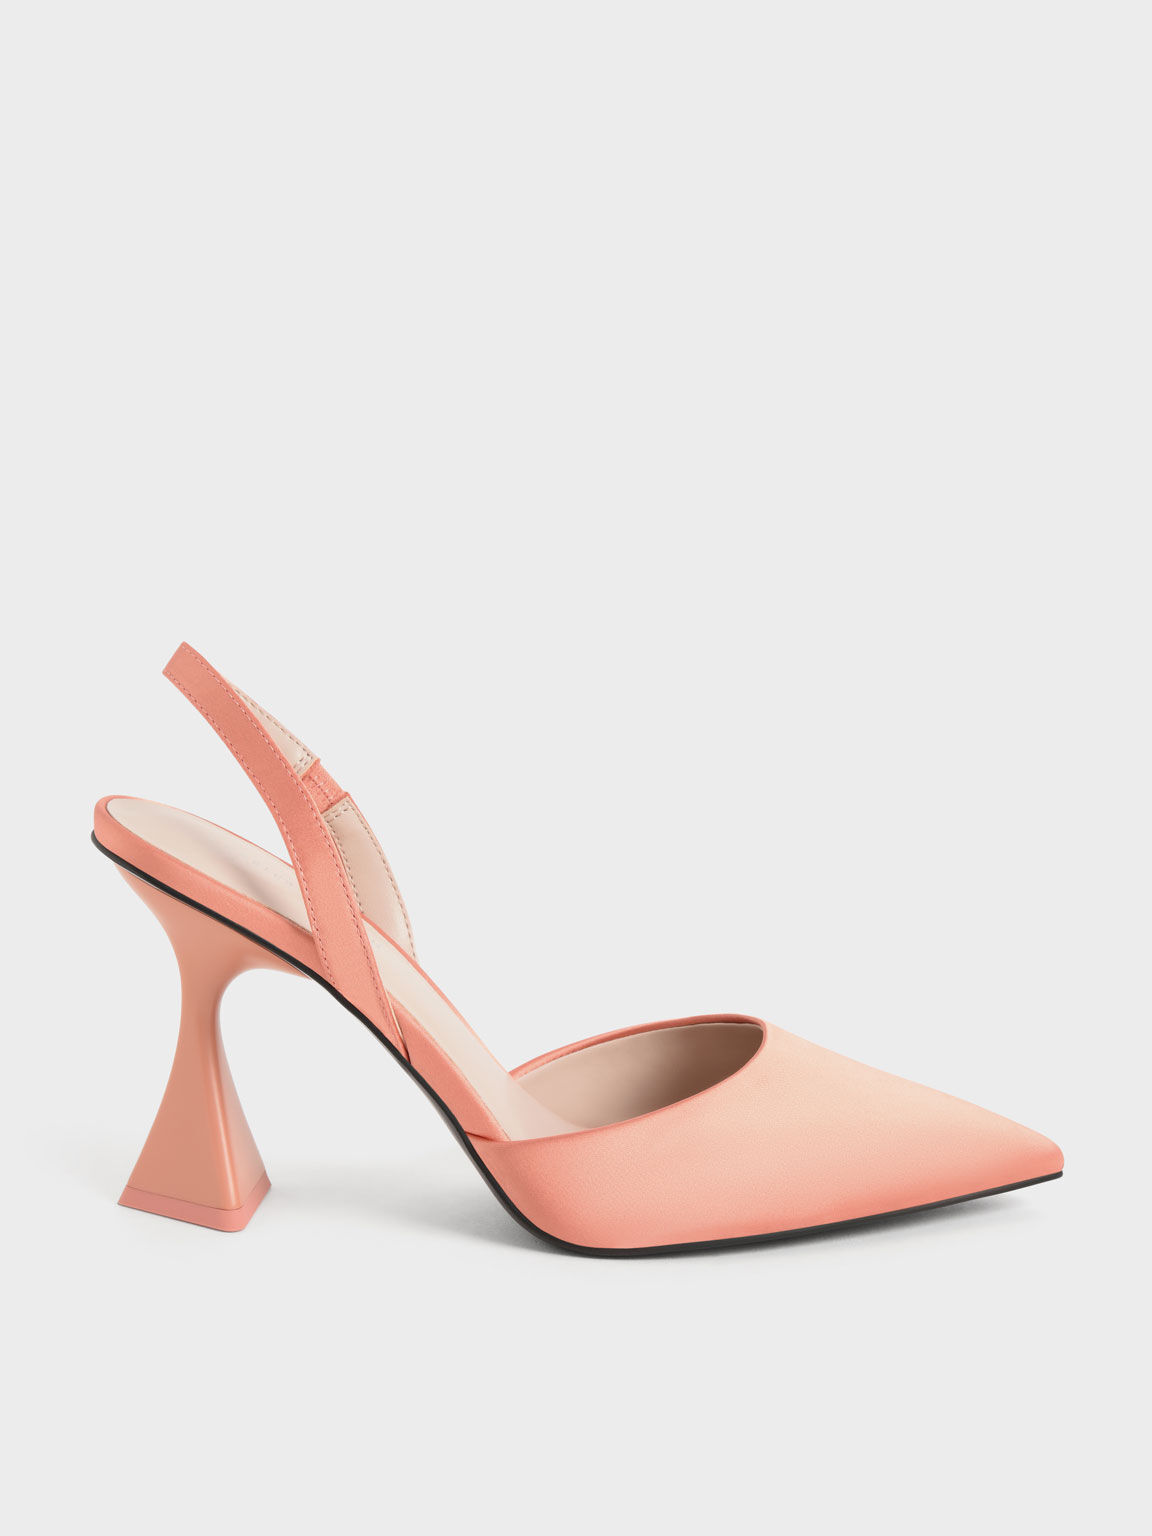 peach platform heels